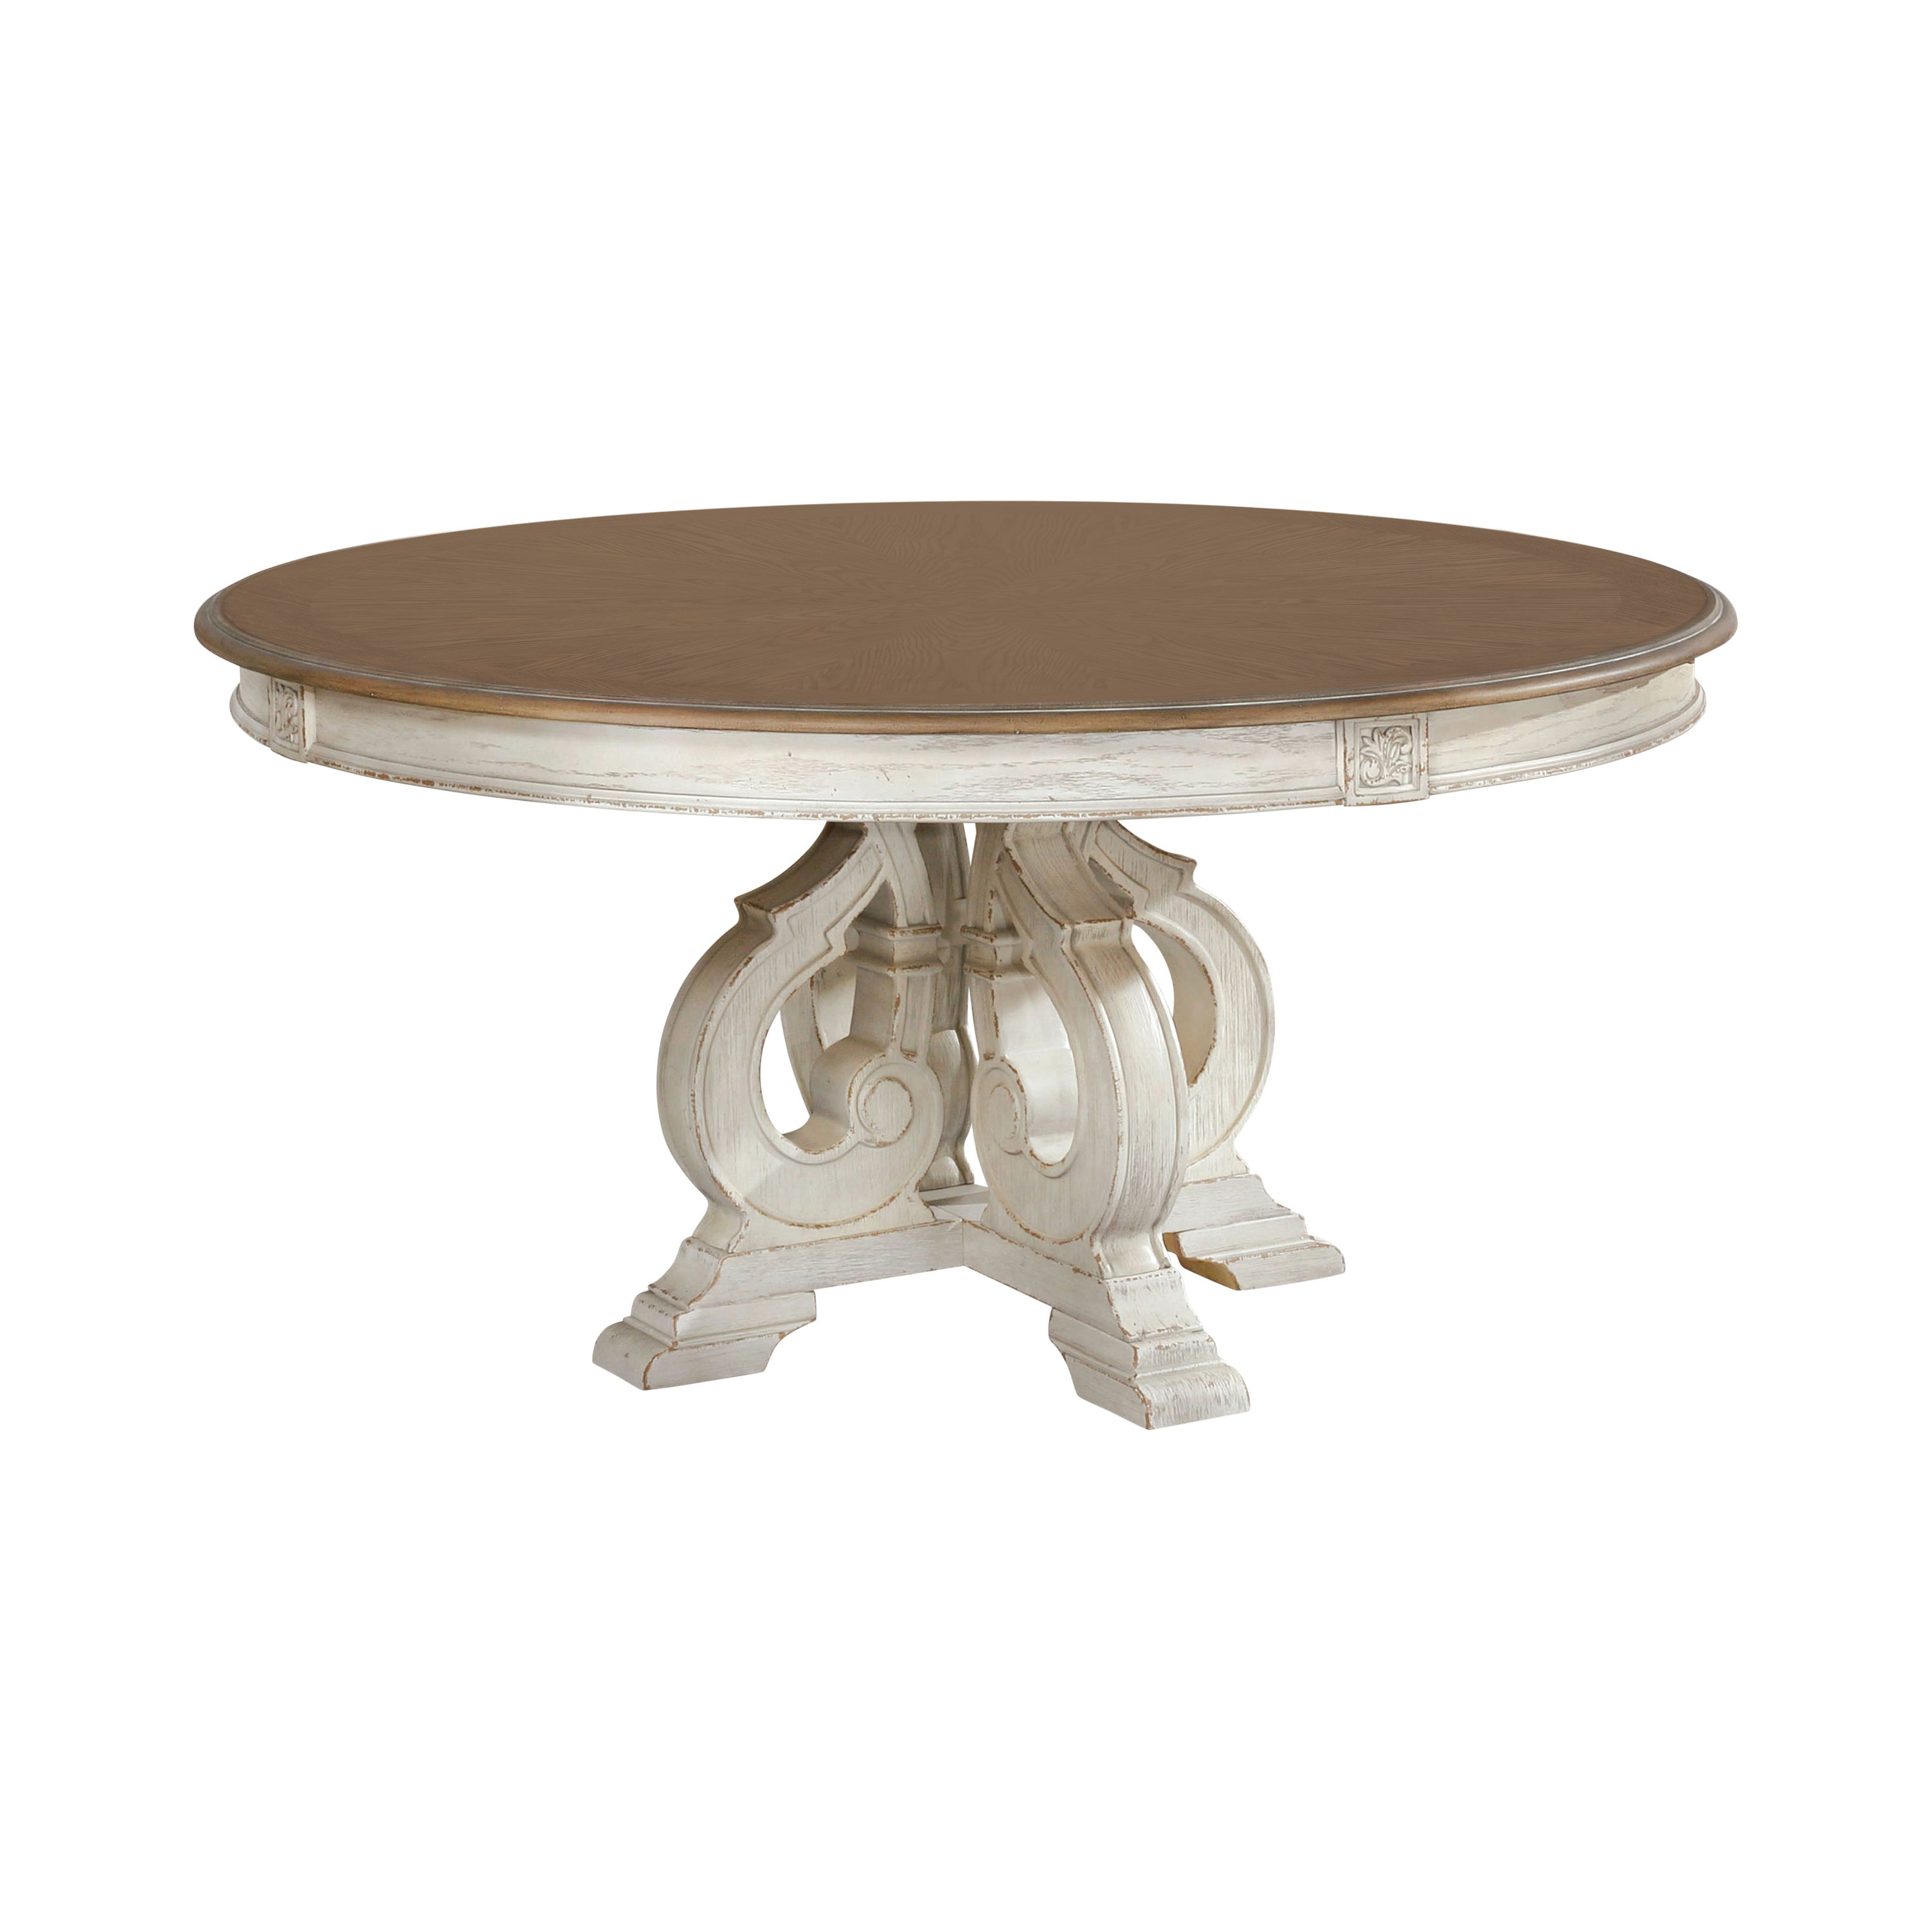 Antique White Composite Rustic Restaurant Table top